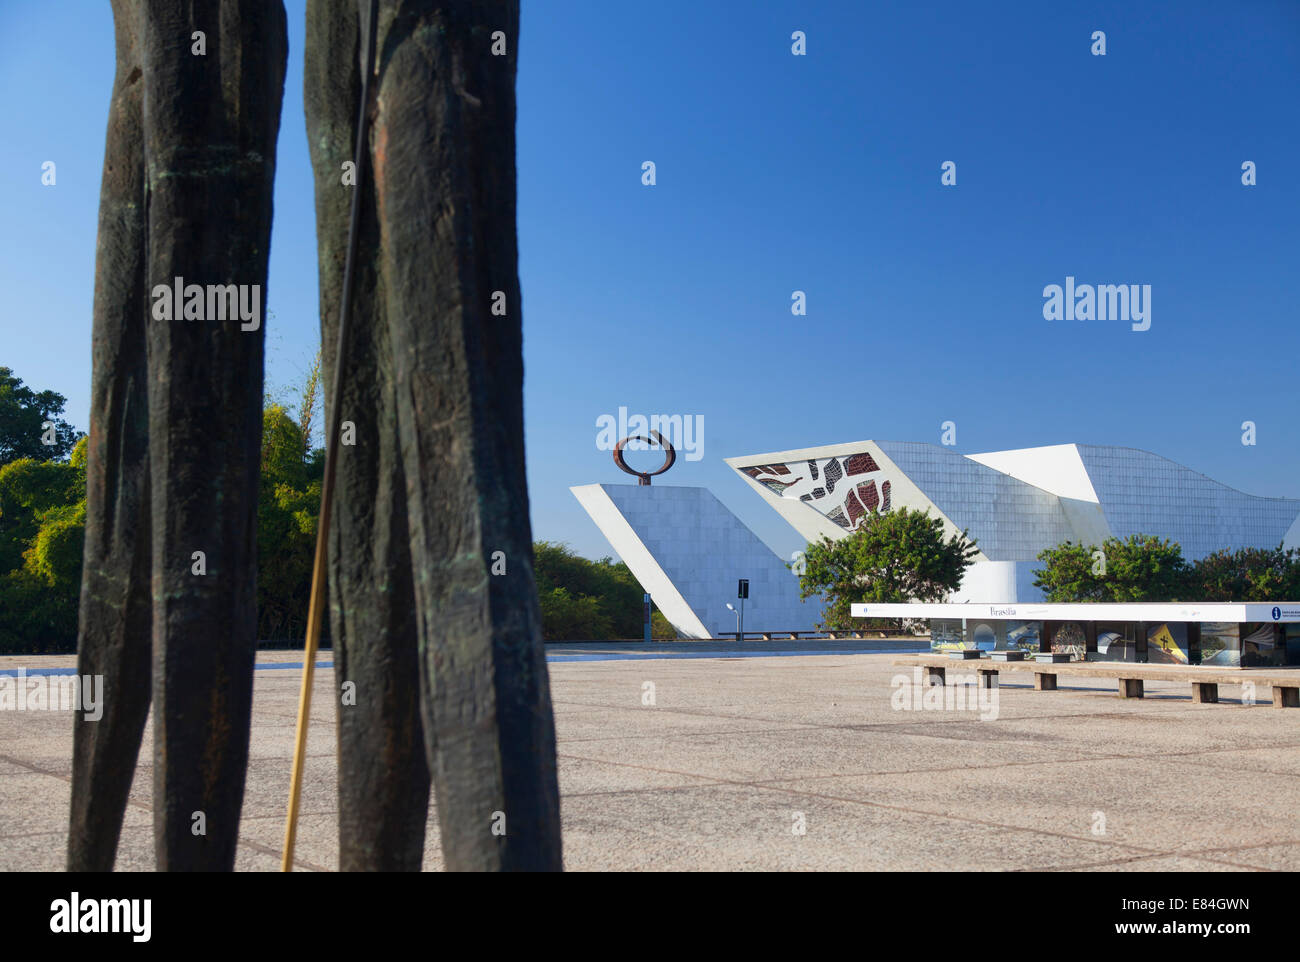 Panthéon National et dois Candangos (deux ouvriers) sculpture en trois pouvoirs Square, Brasilia, Brésil, District Fédéral Banque D'Images